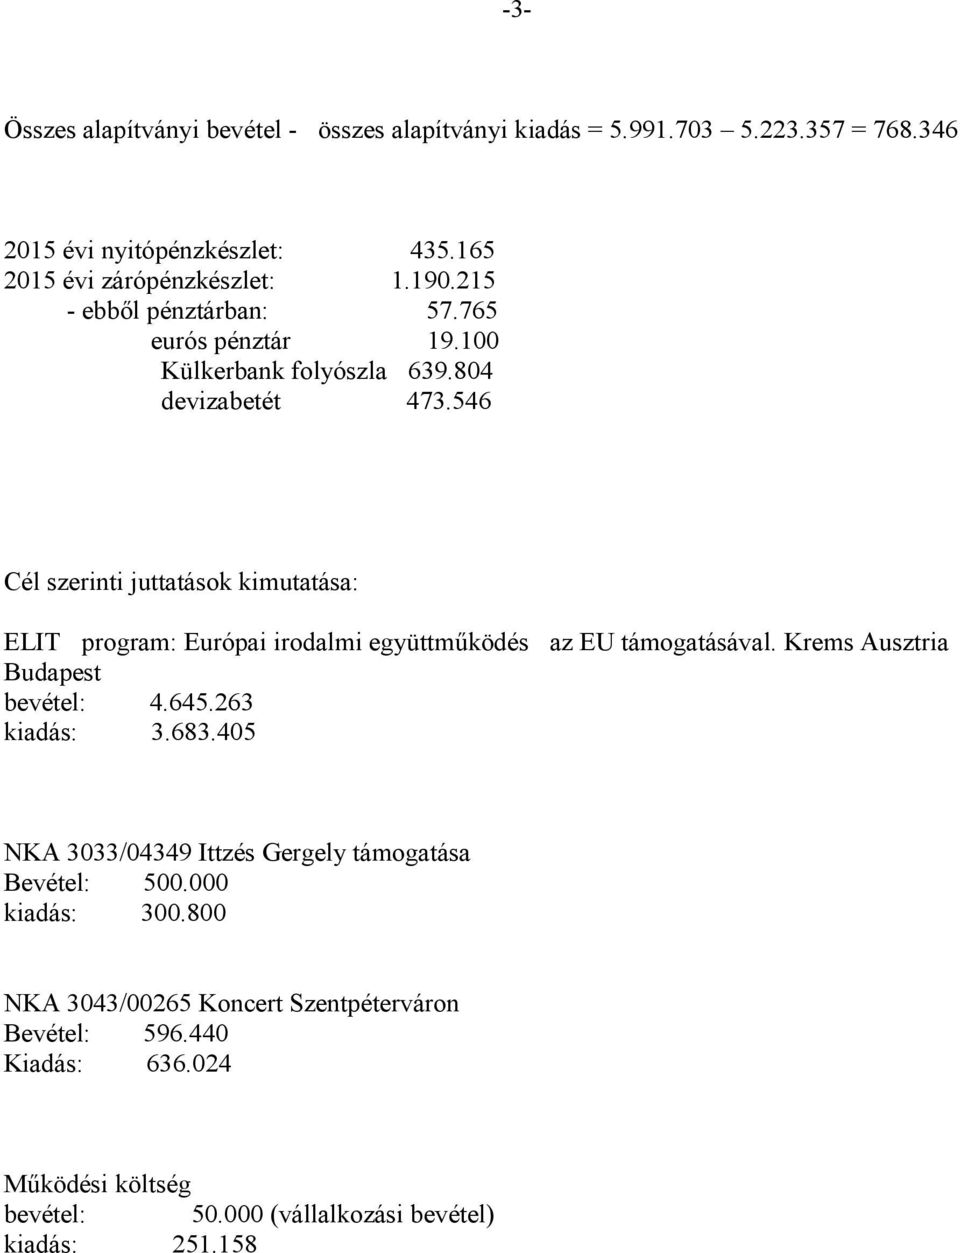 546 Cél szerinti juttatások kimutatása: ELIT program: Európai irodalmi együttműködés az EU támogatásával. Krems Ausztria Budapest bevétel: 4.645.263 kiadás: 3.